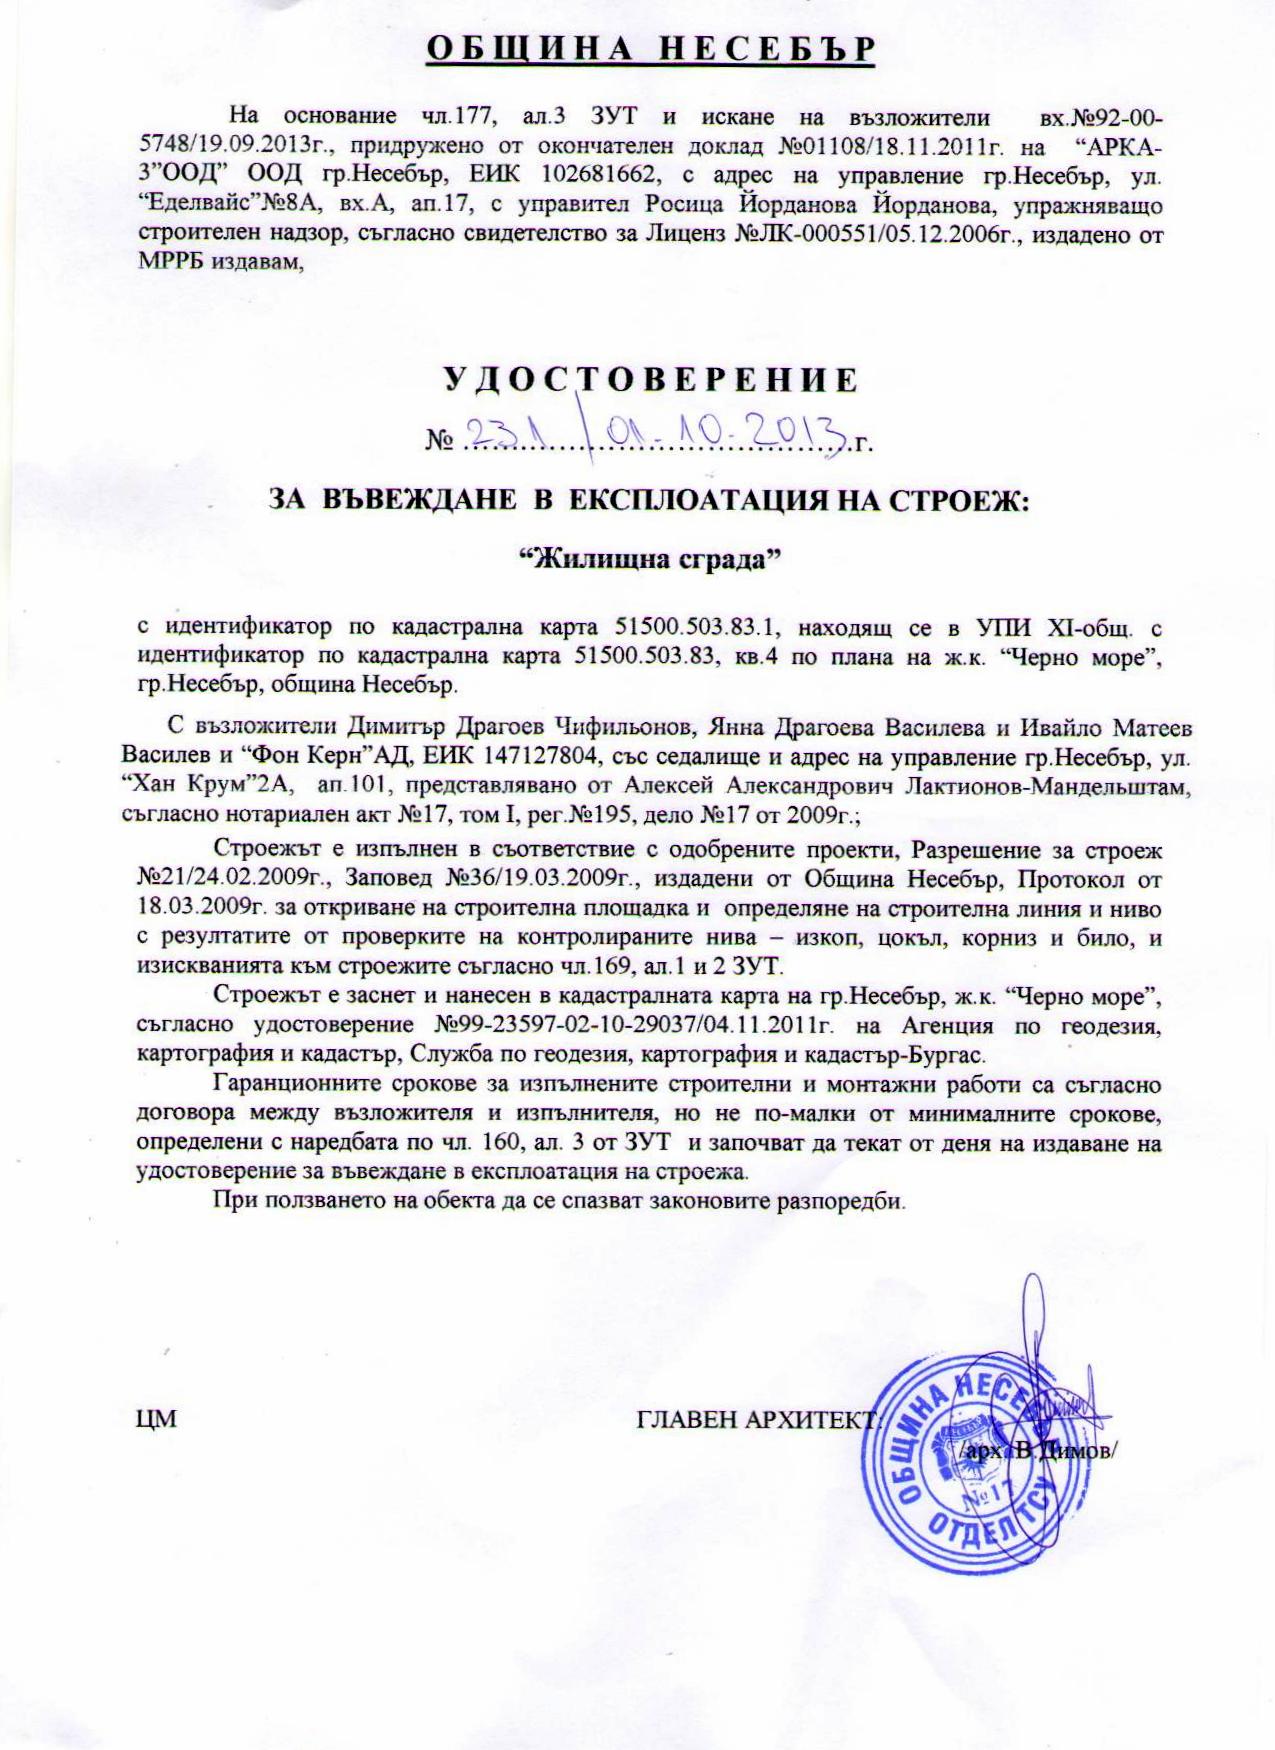 Акт 16 Болгария, образец документа о введении здания в эксплуатацию